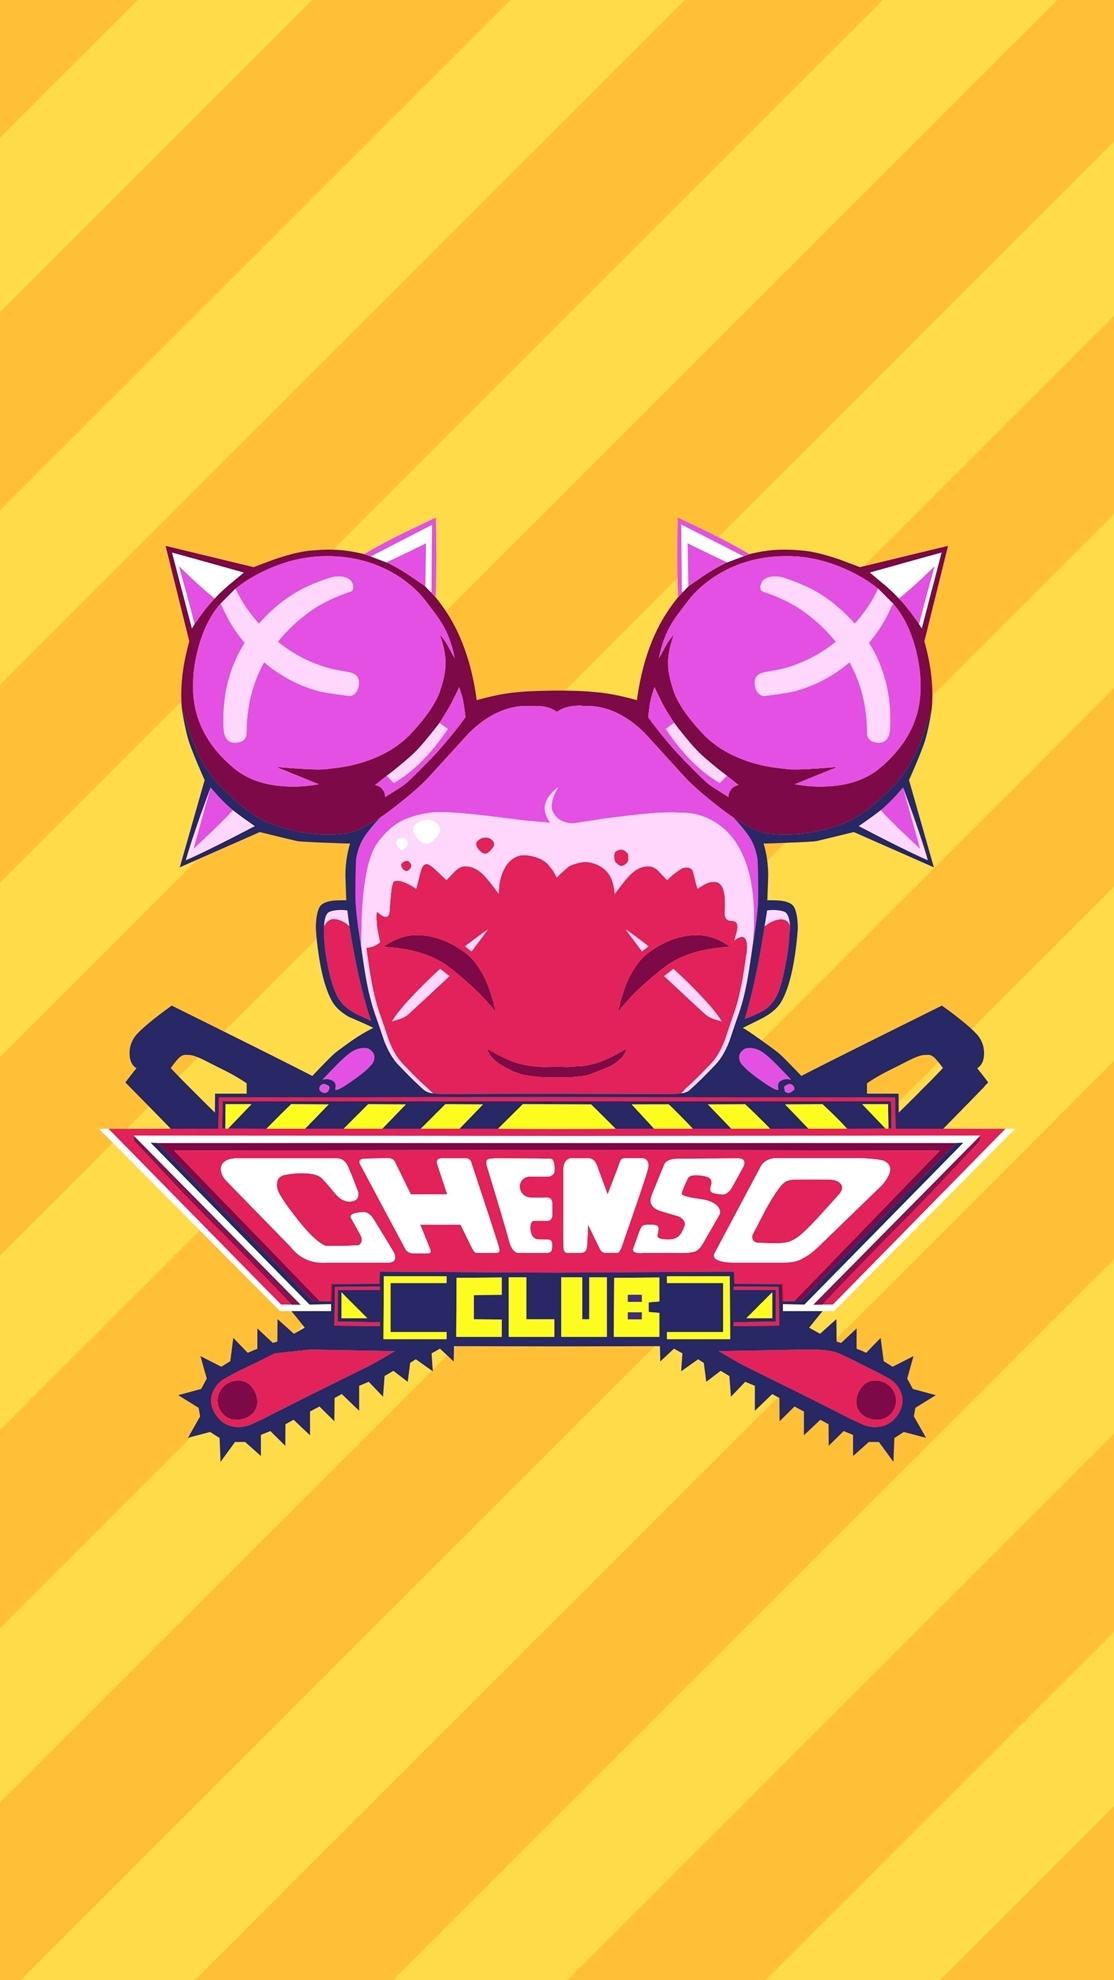 Chenso Club | SEA (257a434f-51fd-4a7f-b9c9-a63eab003d44)